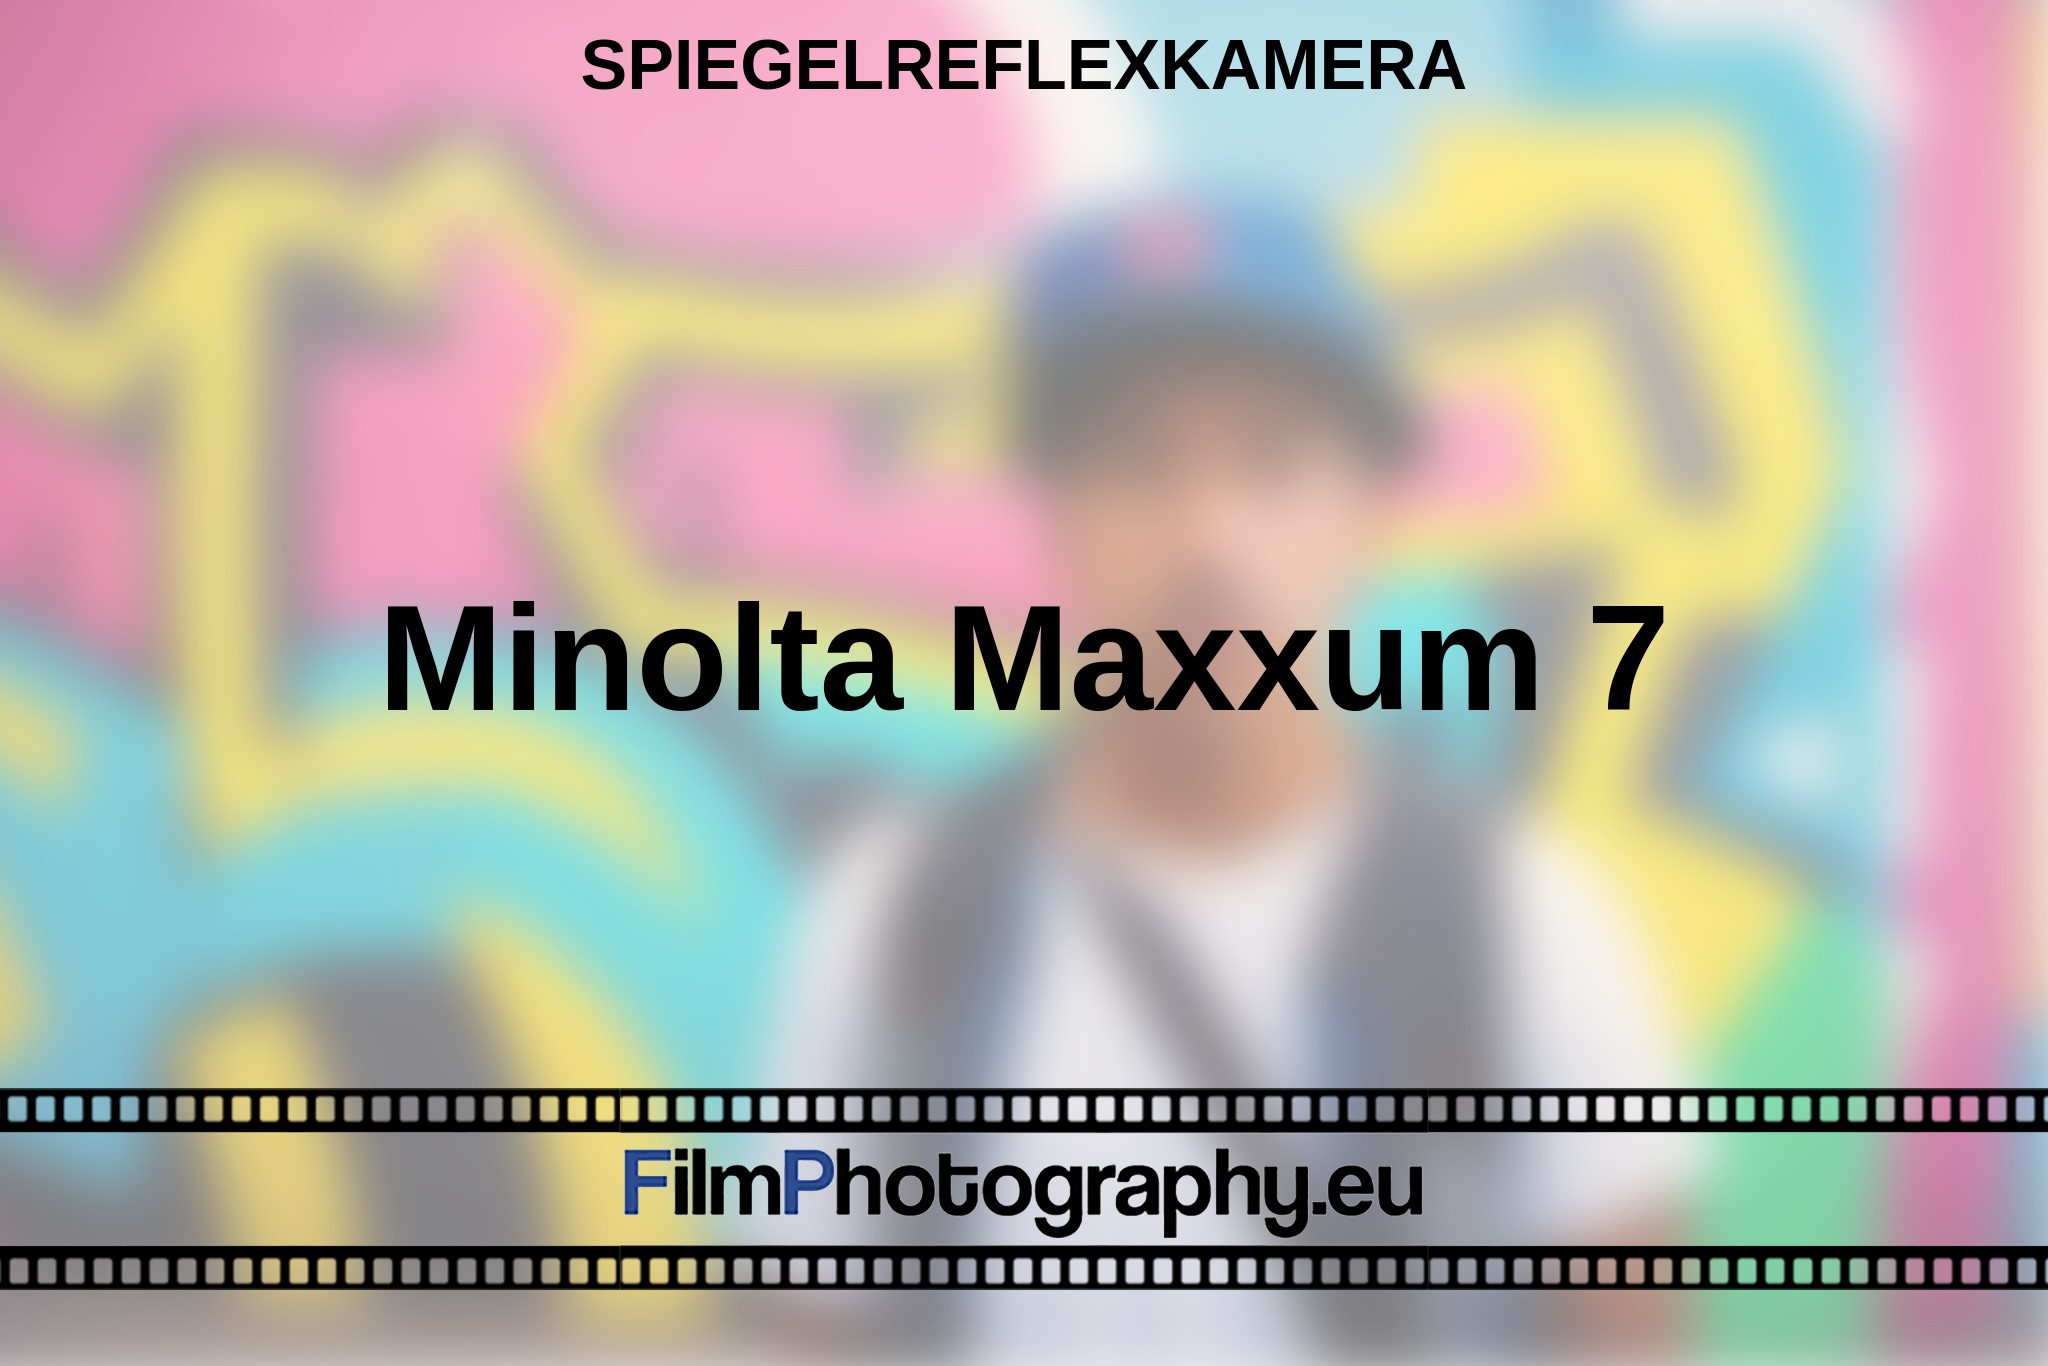 minolta-maxxum-7-spiegelreflexkamera-bnv.jpg